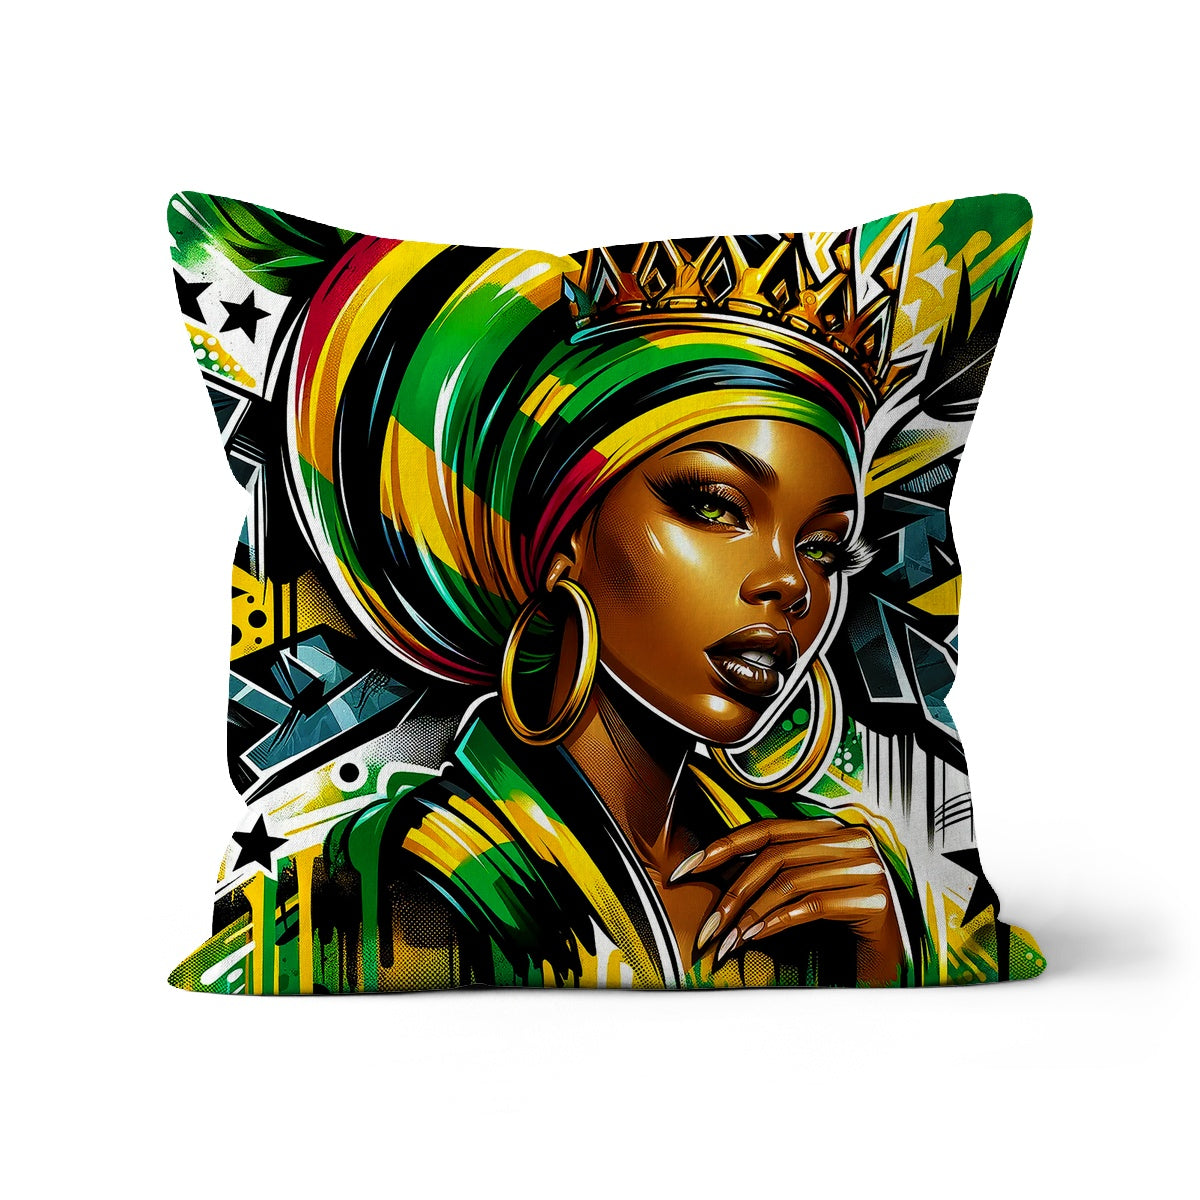 Gift For Her Rasta Queen Street Black Women Gift Cushion